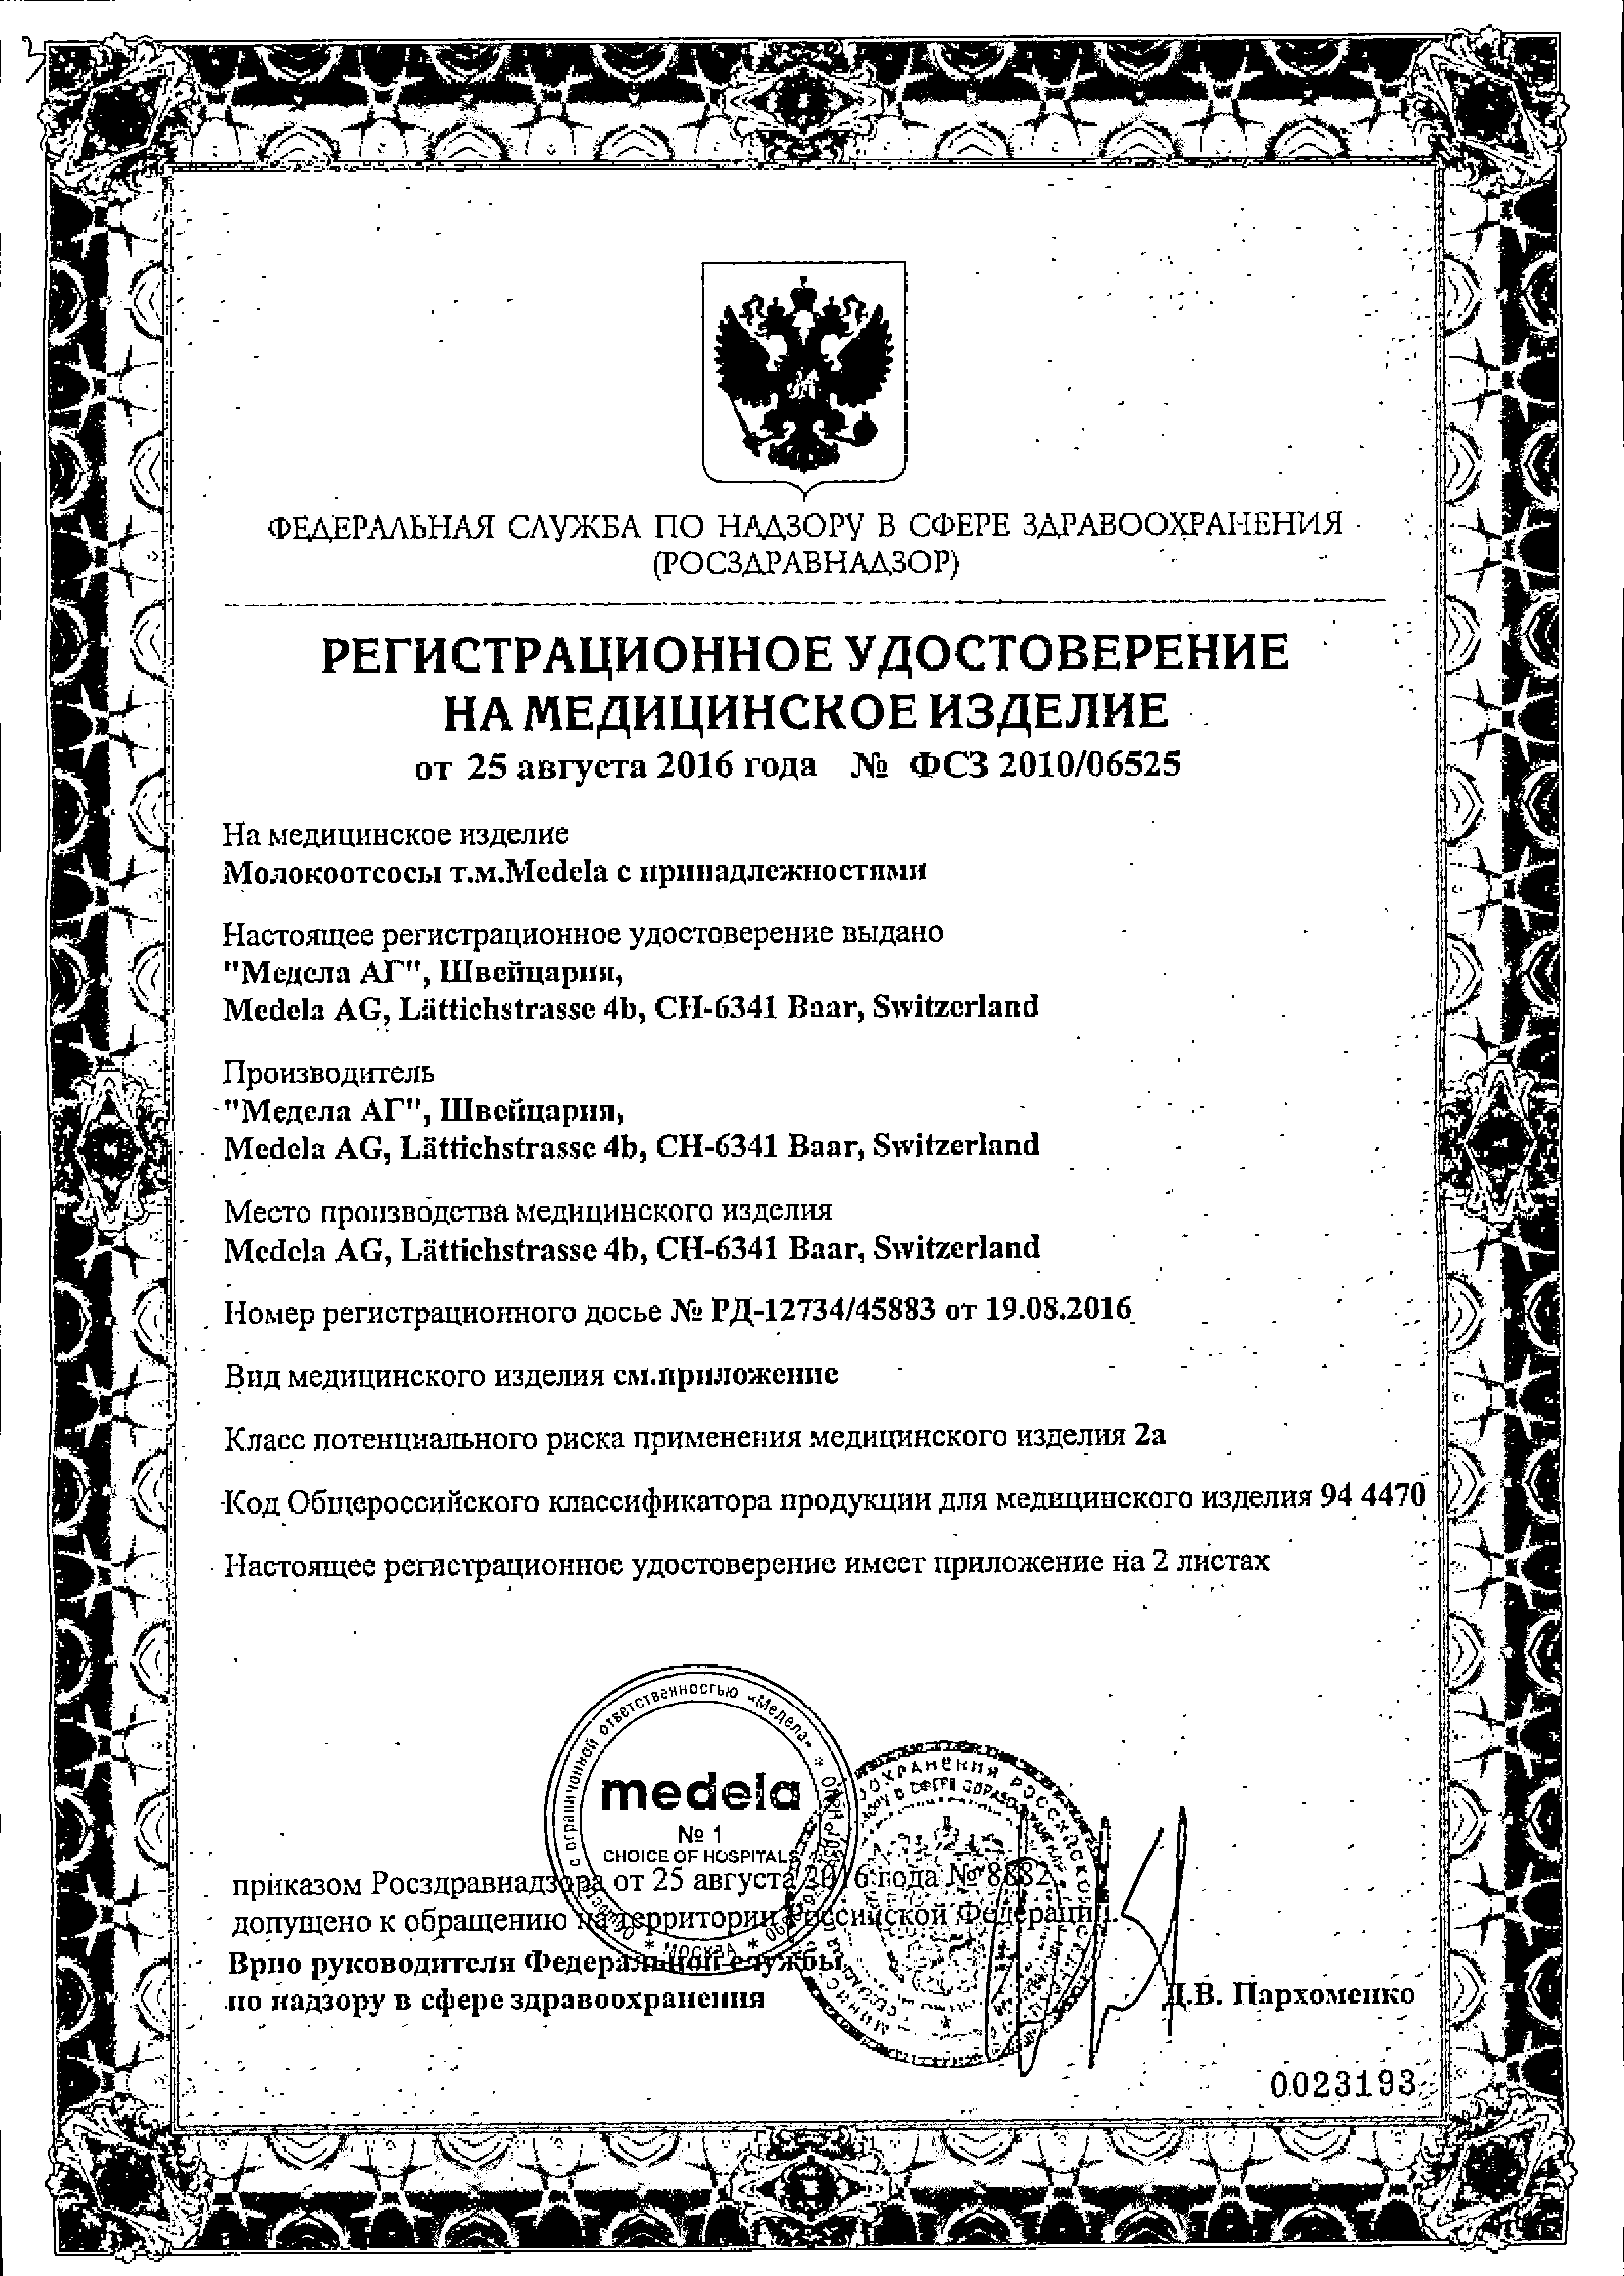 Medela Harmony basic Молокоотсос ручной сертификат